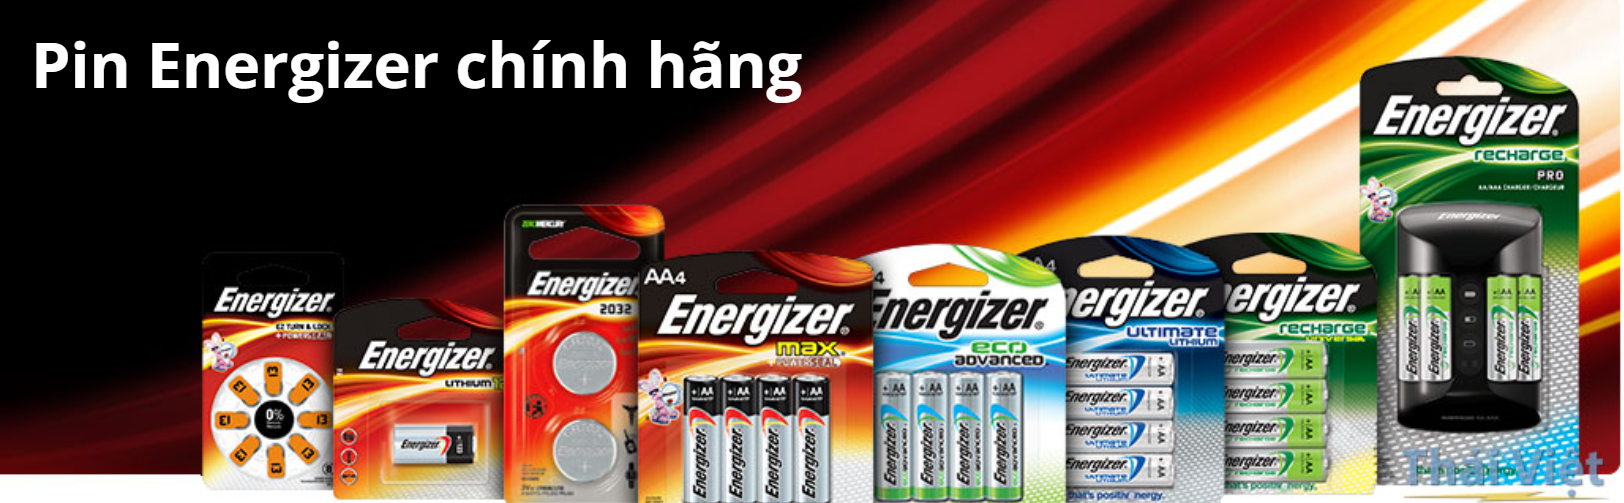 Pin Energizer chính hãng có tại Phú Quý